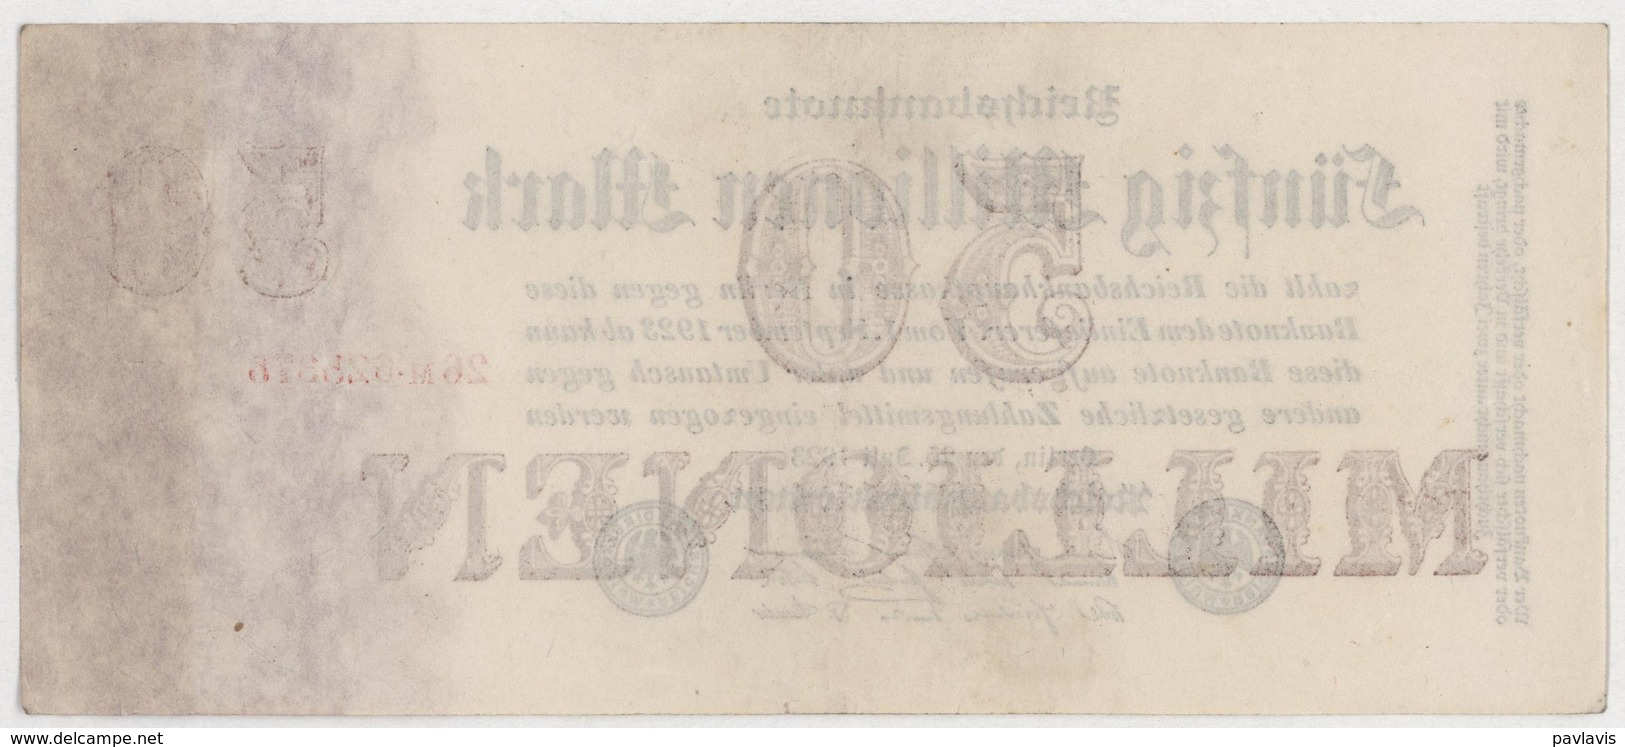 50 Millionen Mark / 50 000 000 Mark - Reichsbanknote - German Reich / Deutsches Reich - Year 1923 - 50 Millionen Mark